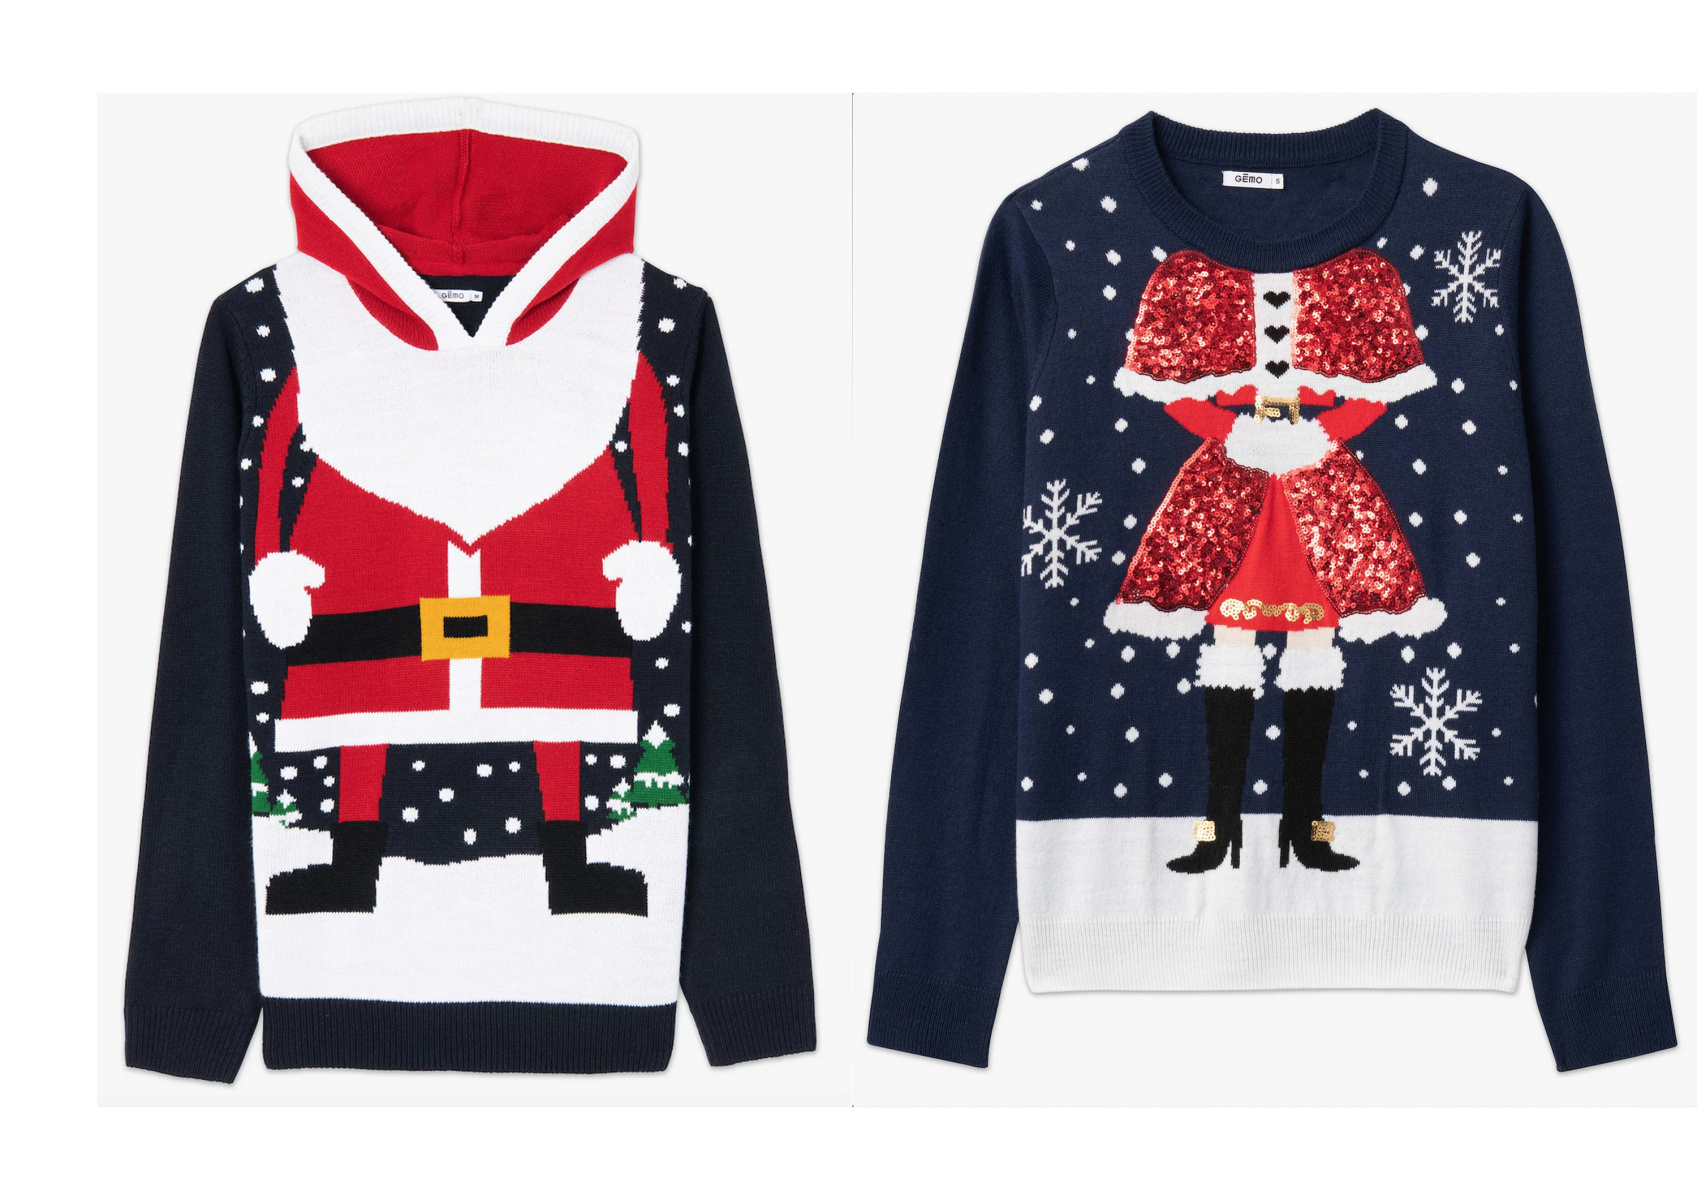 Did 'Bridget Jones' start the Ugly Christmas Sweater craze? Here's